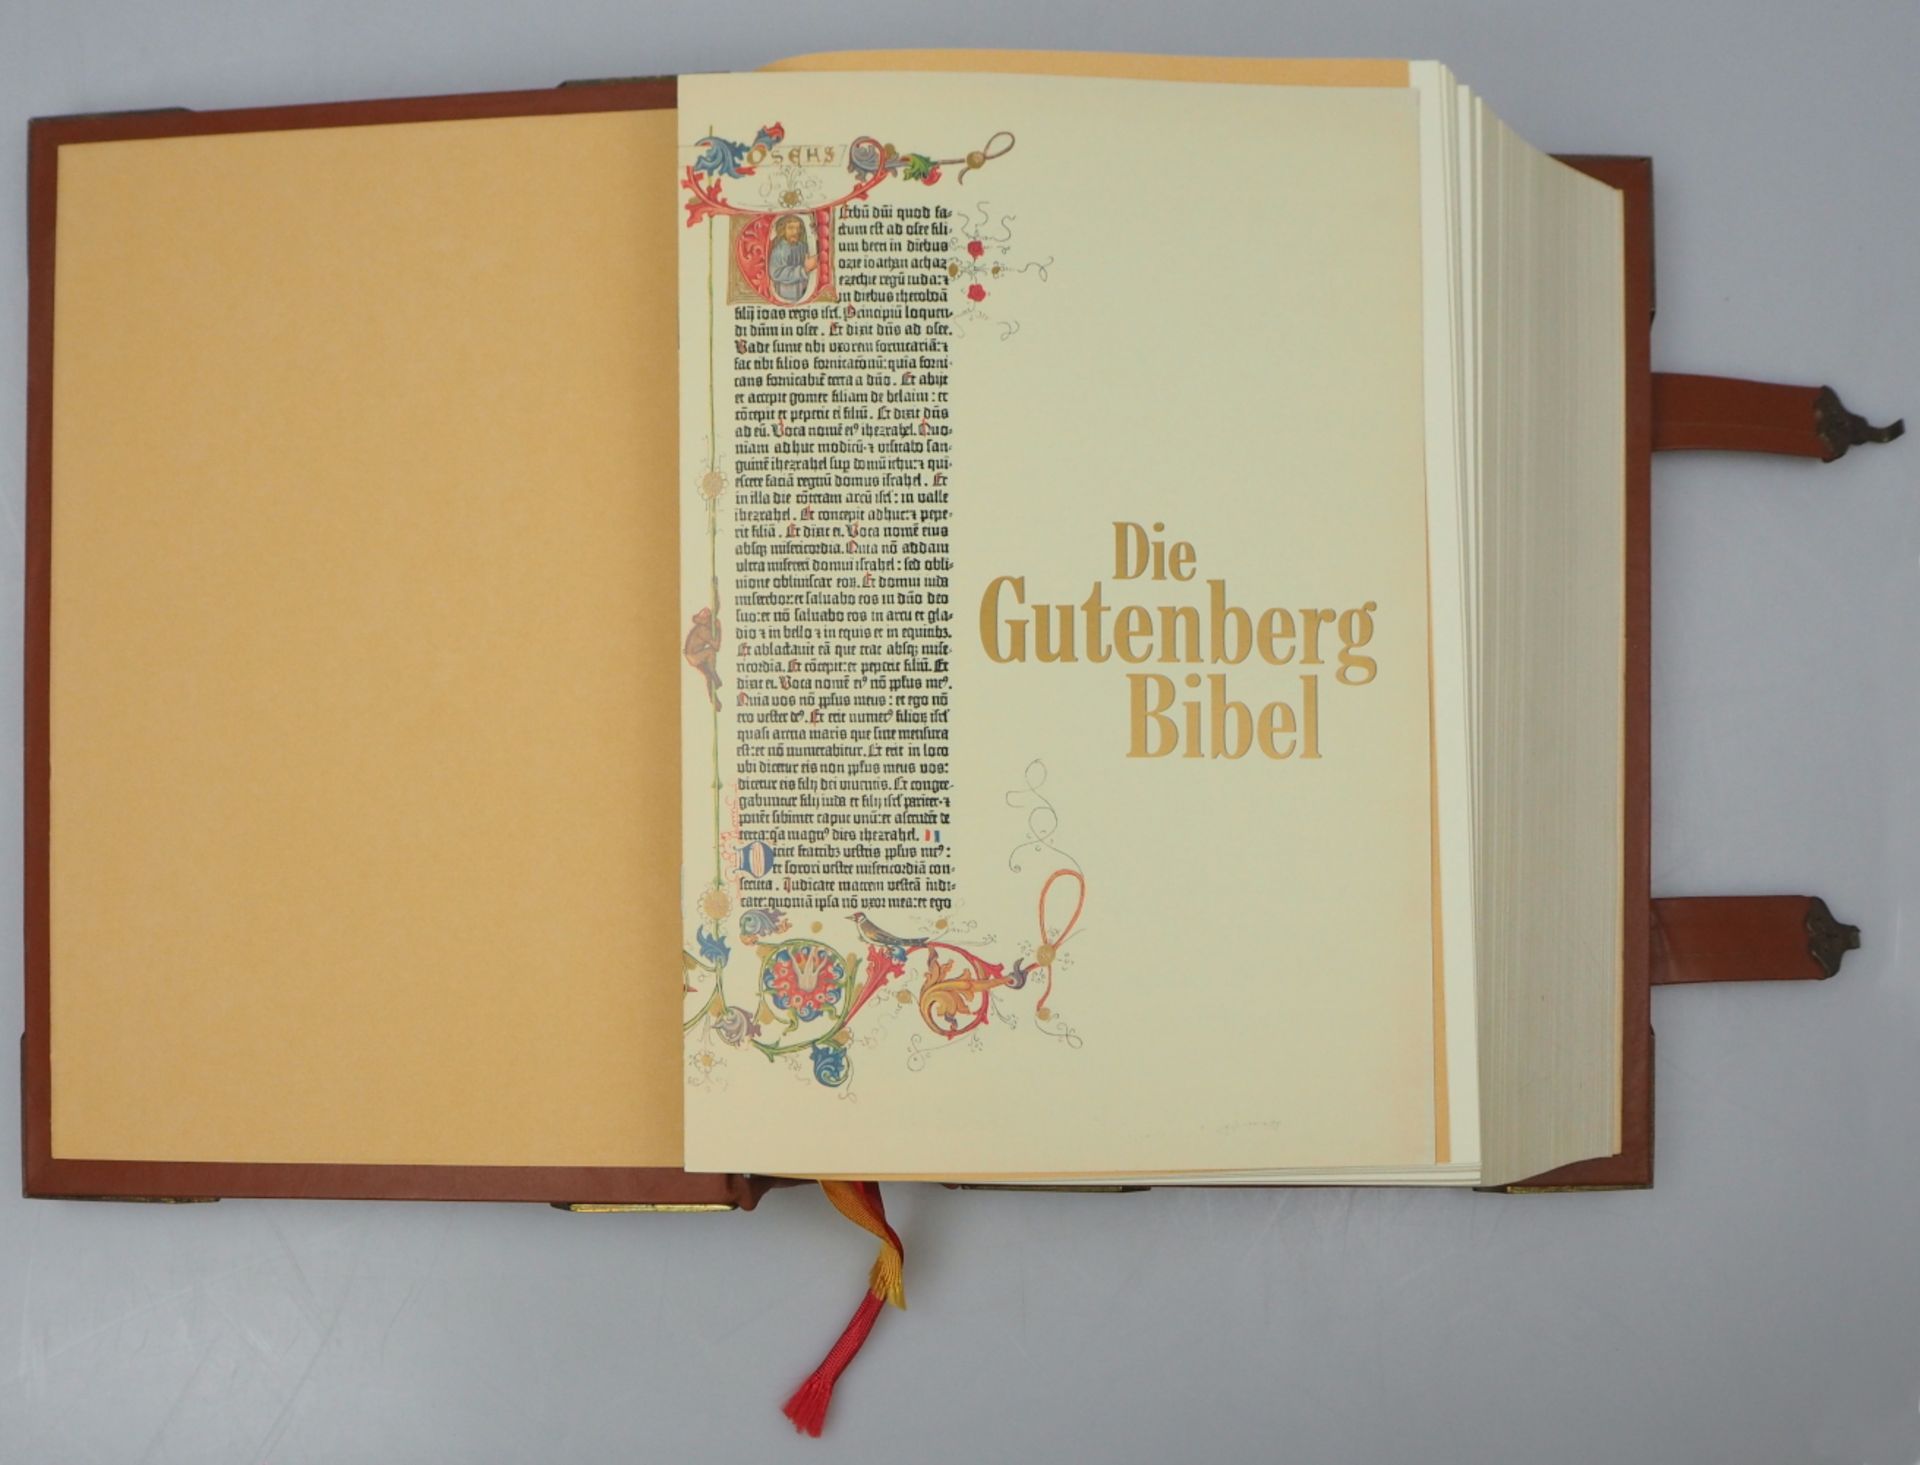 1 Prachtbibel "Die Heilige Schrift des Alten und Neuen Testamentes" Augsburg 1991 - Bild 2 aus 5